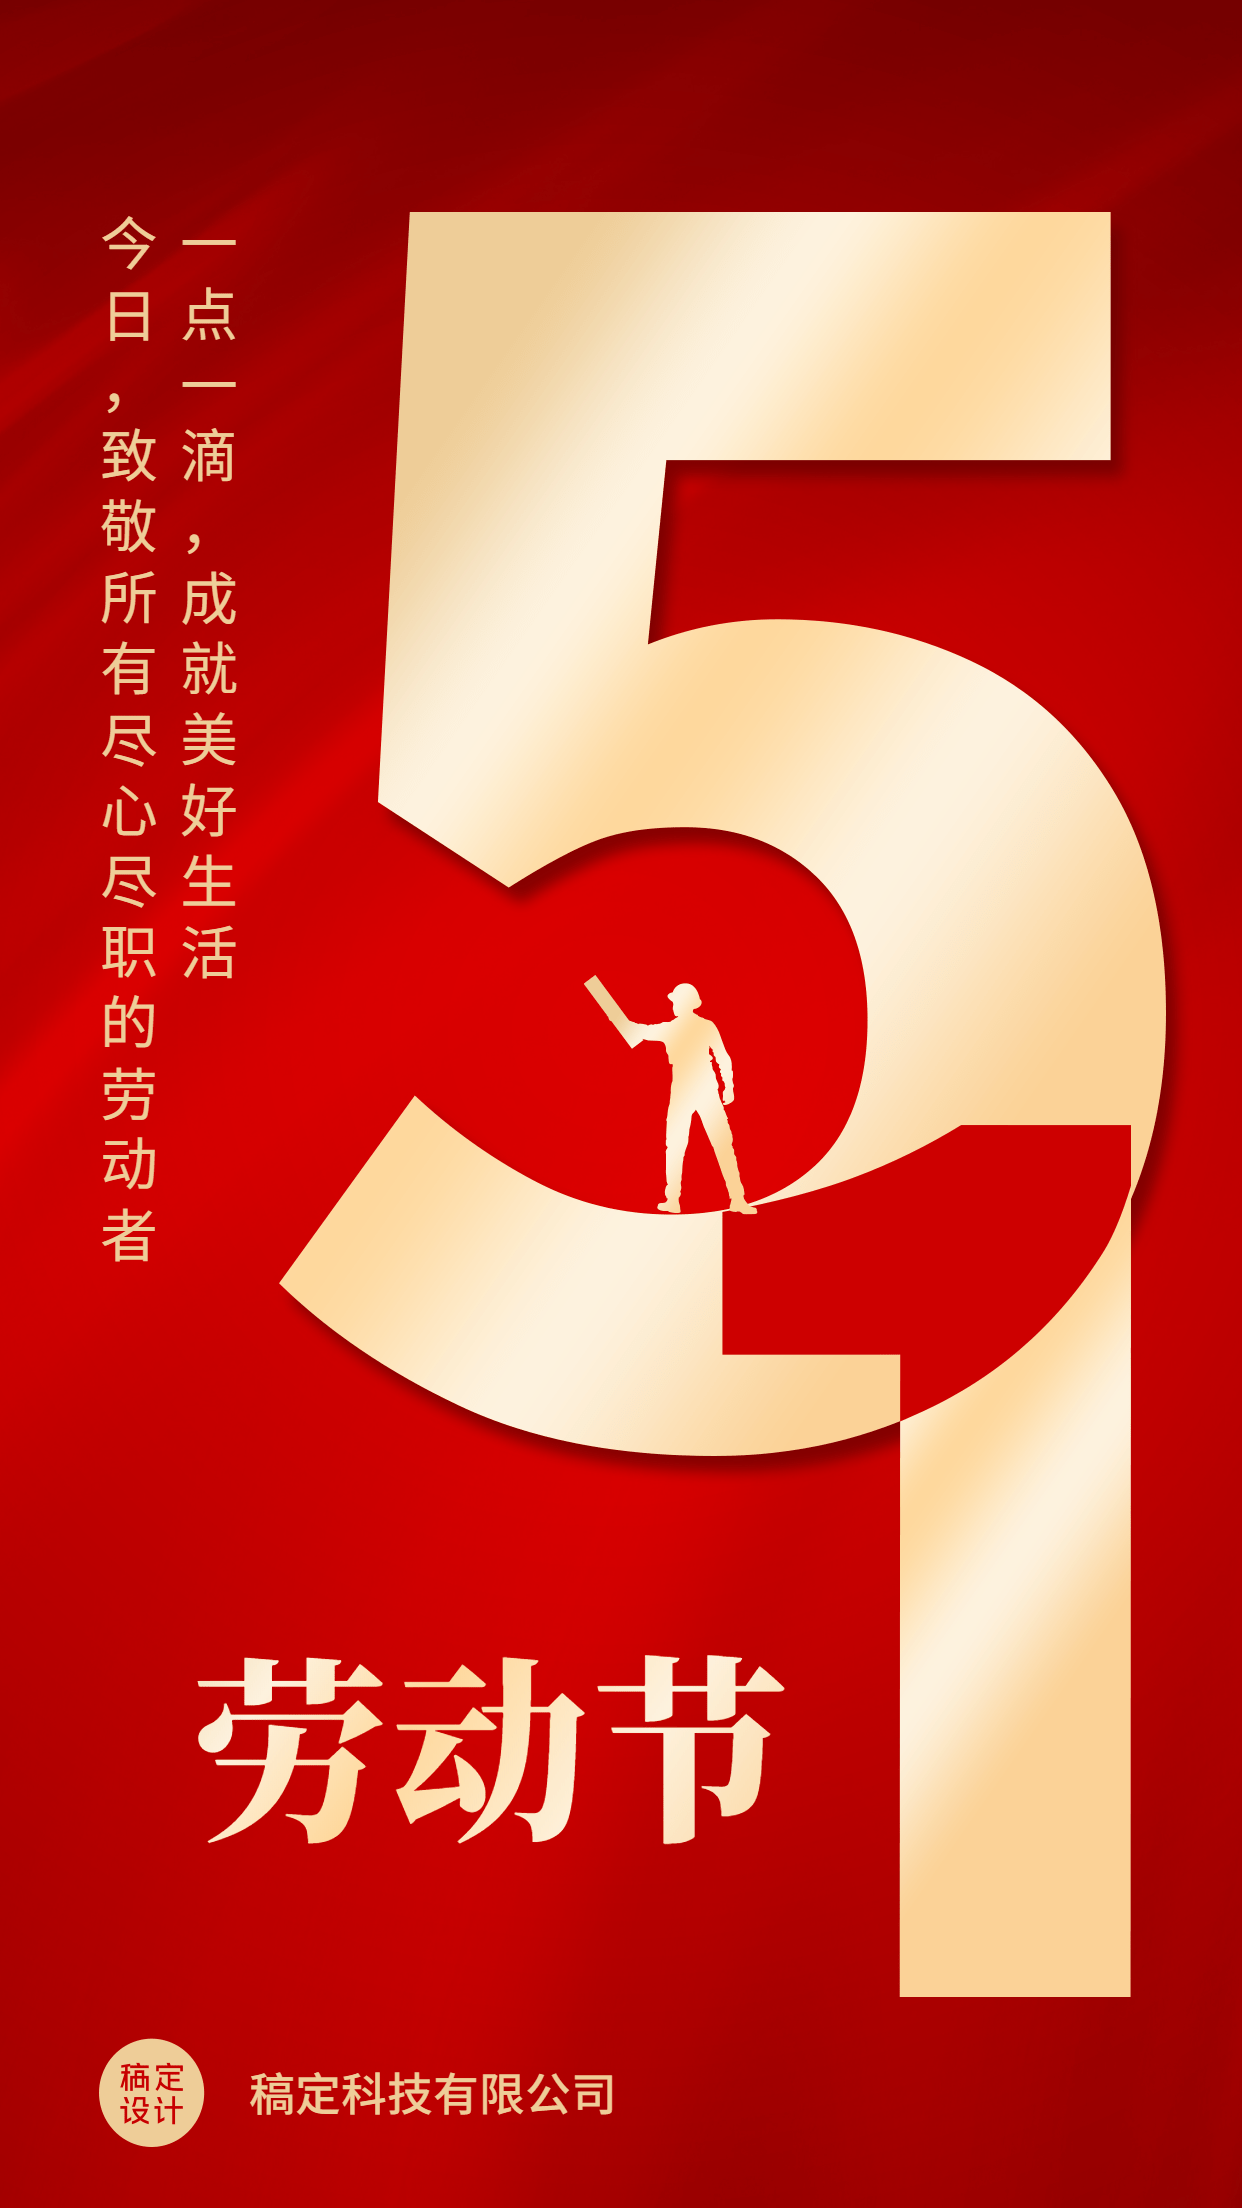 五一劳动节企业行政节日祝福问候海报预览效果